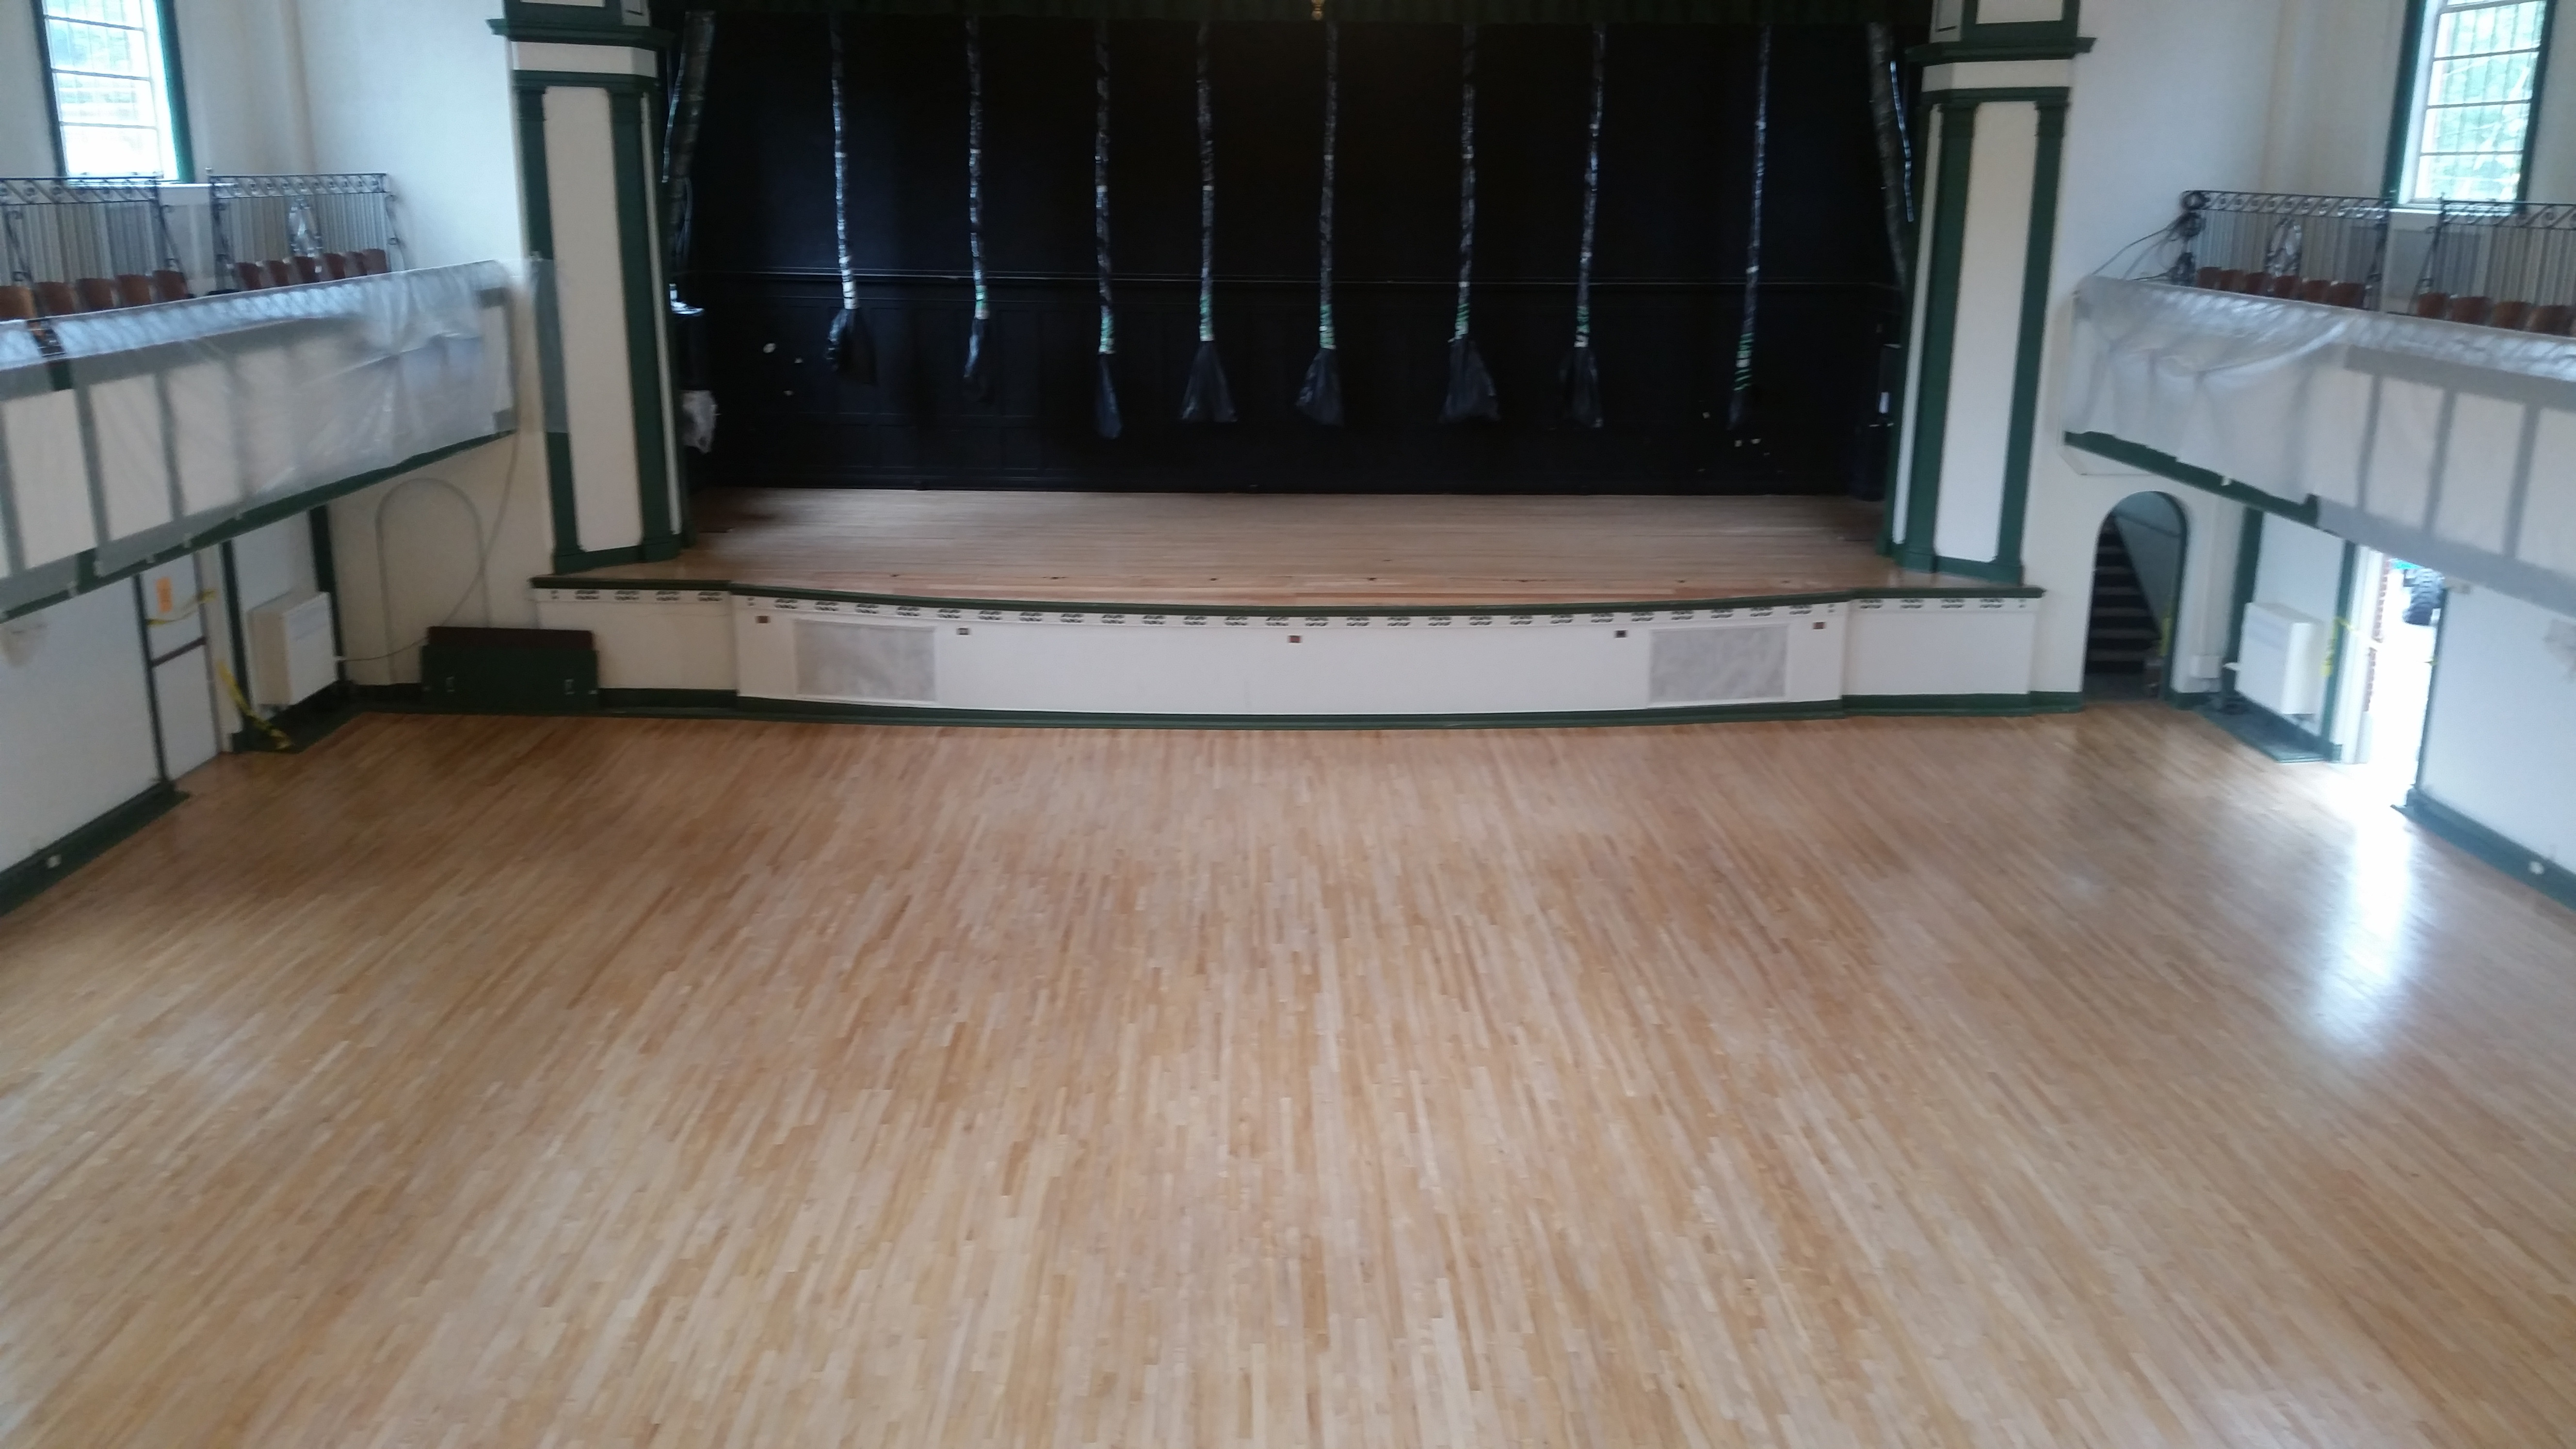 Hardwood Floor Refinishing Utica Ny Of Rochester Hardwood Floors Of Utica Home Inside 20150723 161118